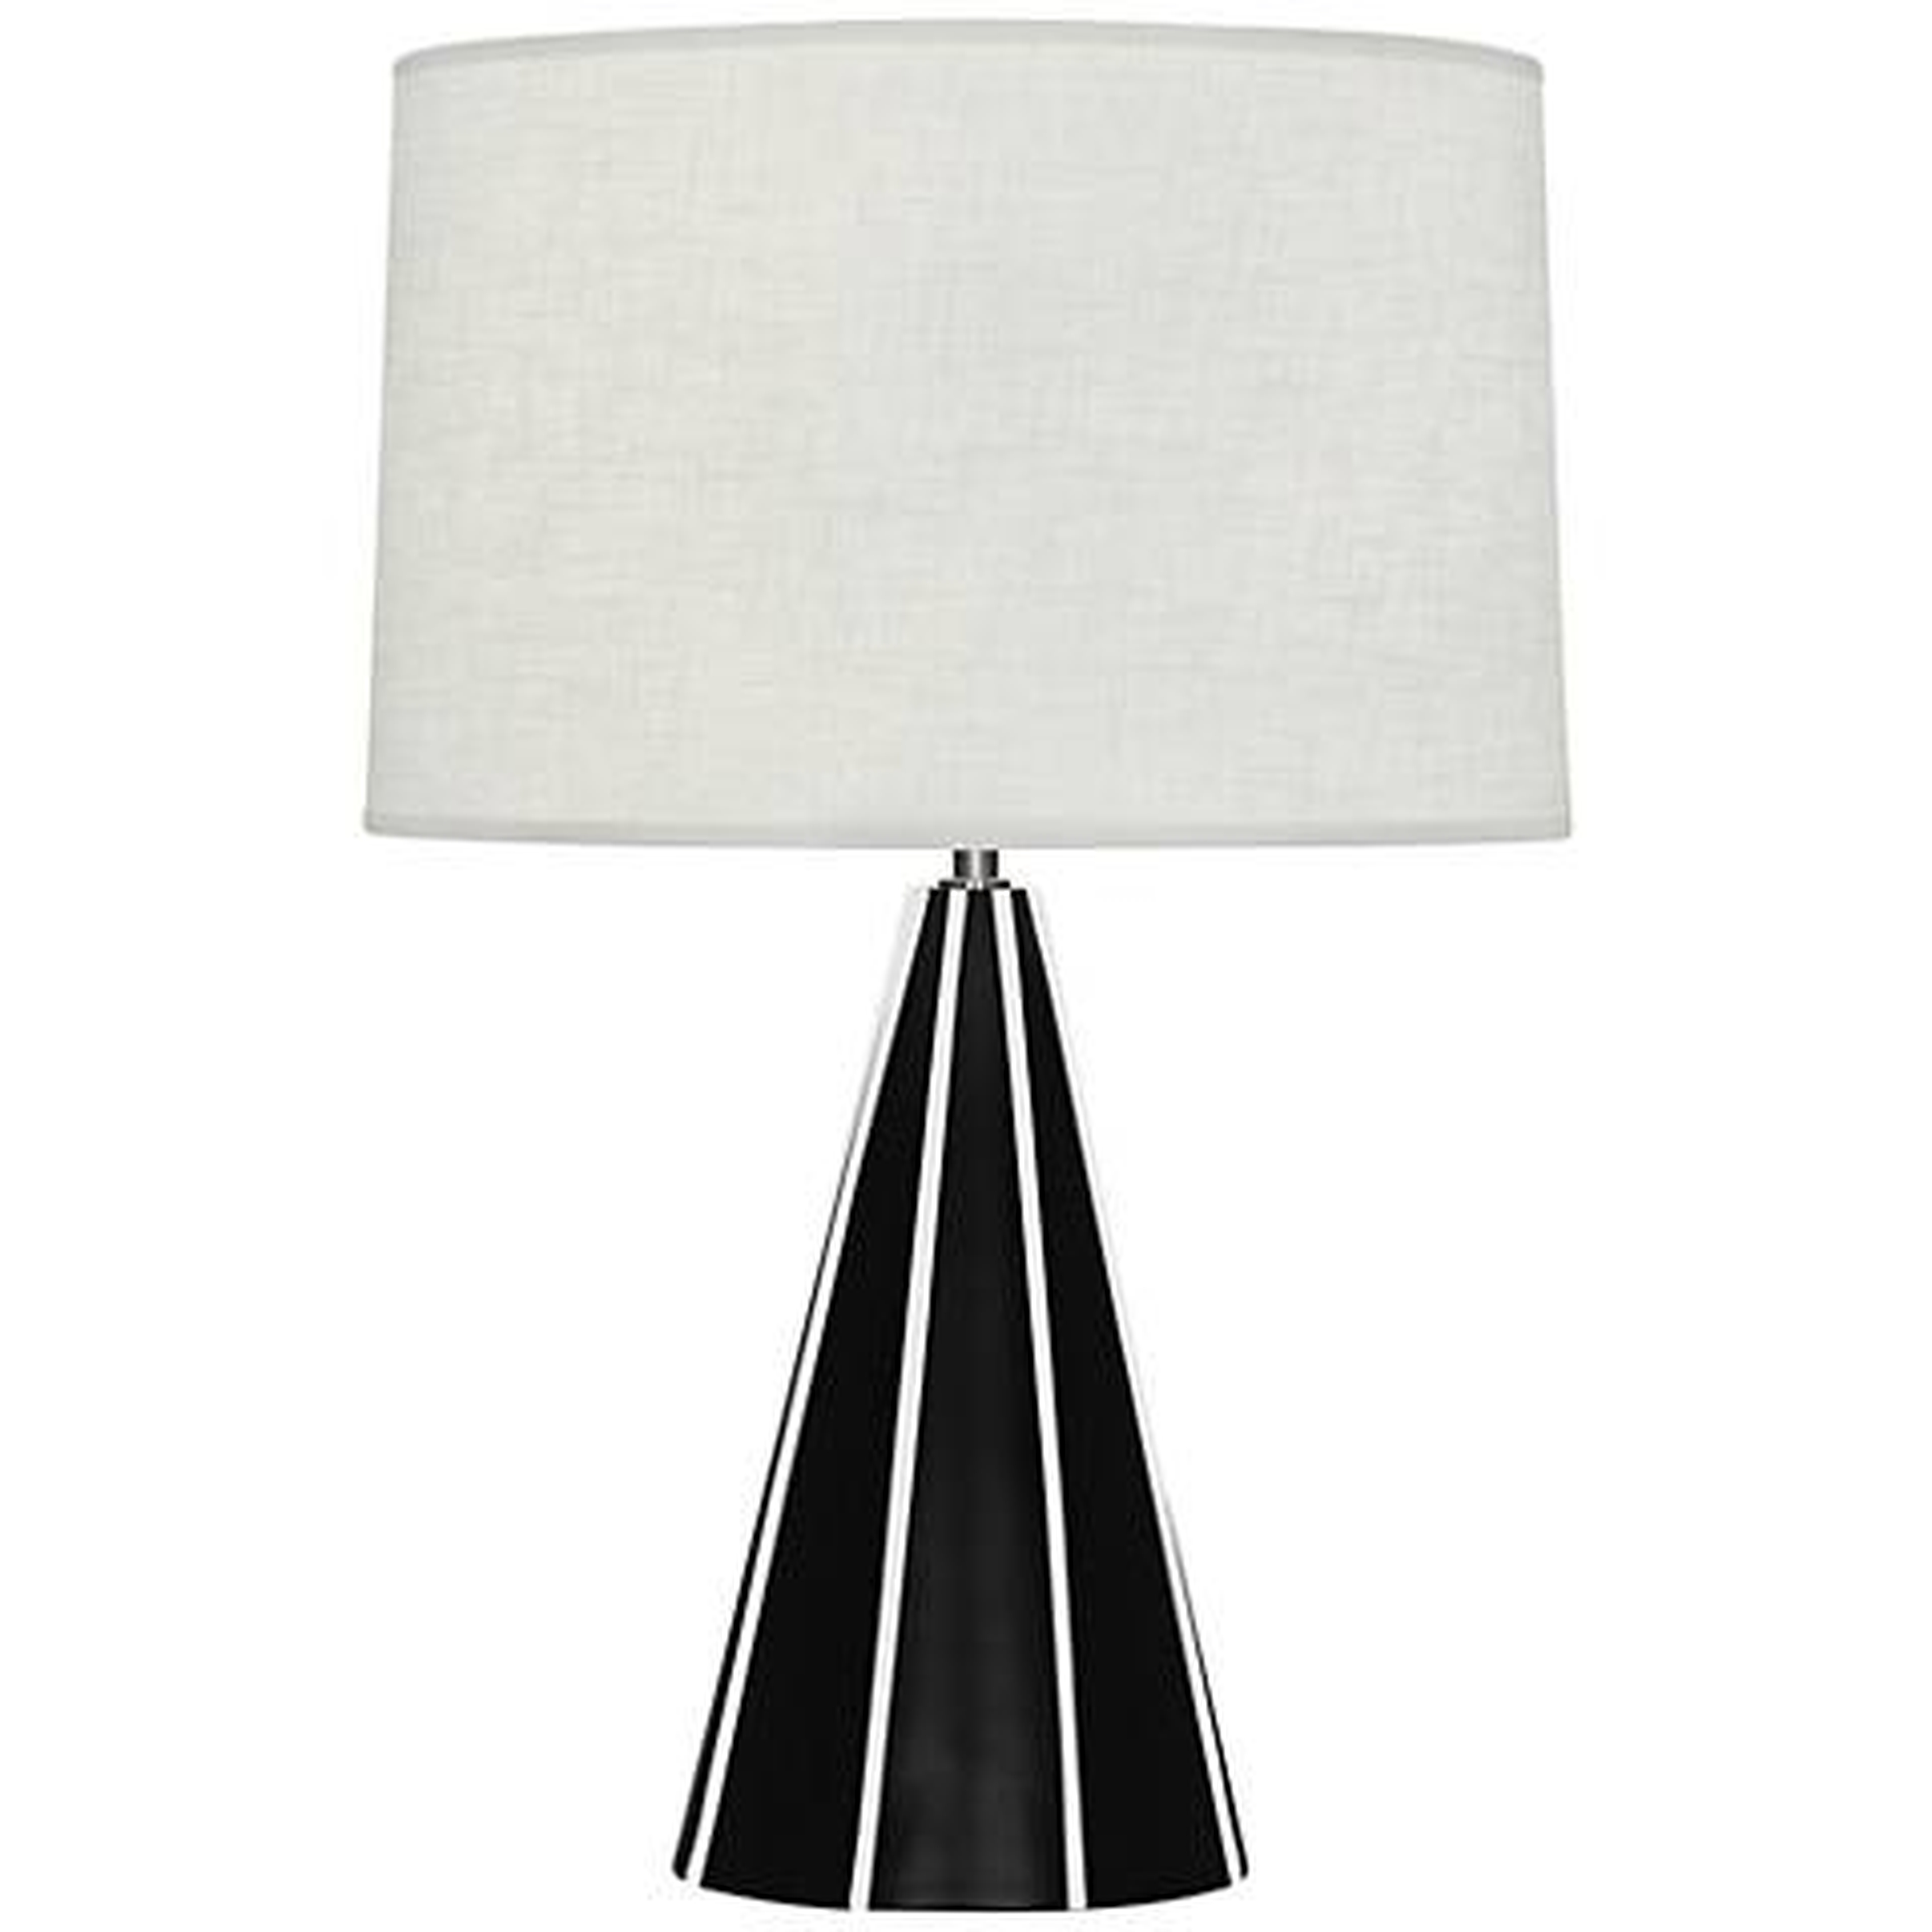 Robert Abbey Monique Matte Black and White Table Lamp - Lamps Plus